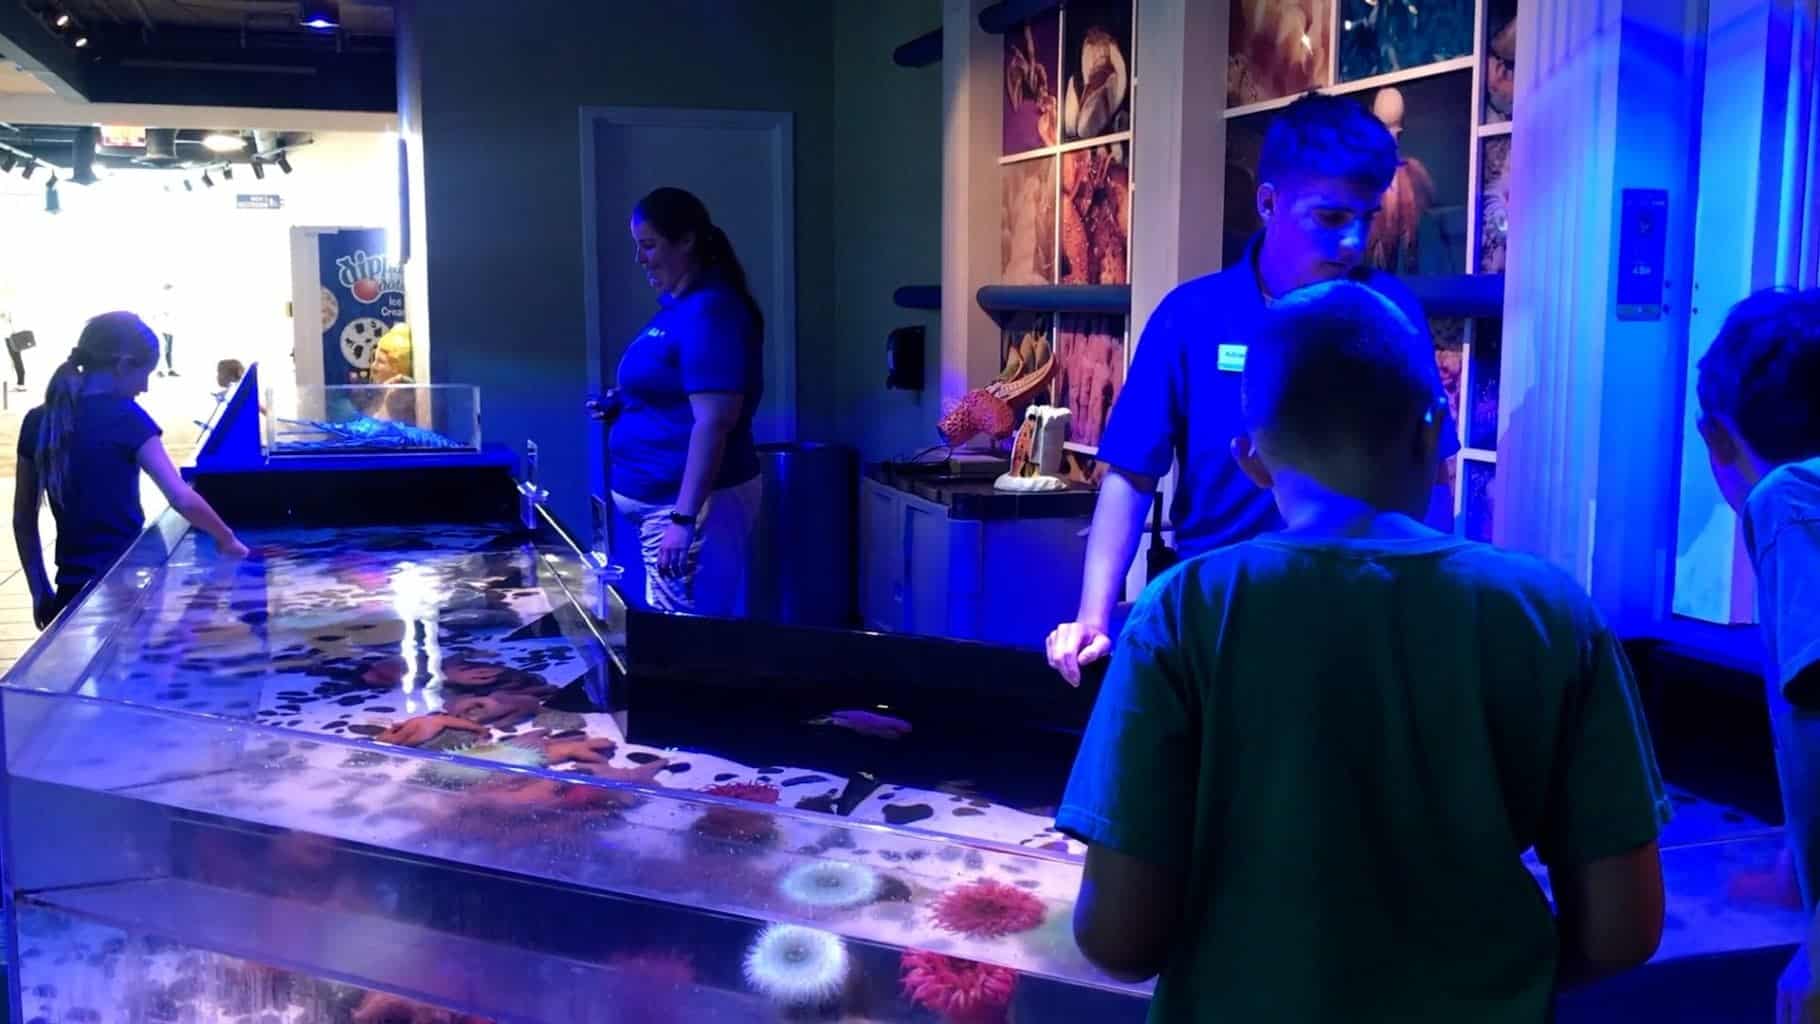 The Florida Aquarium Animal Experiences in Tampa Bay